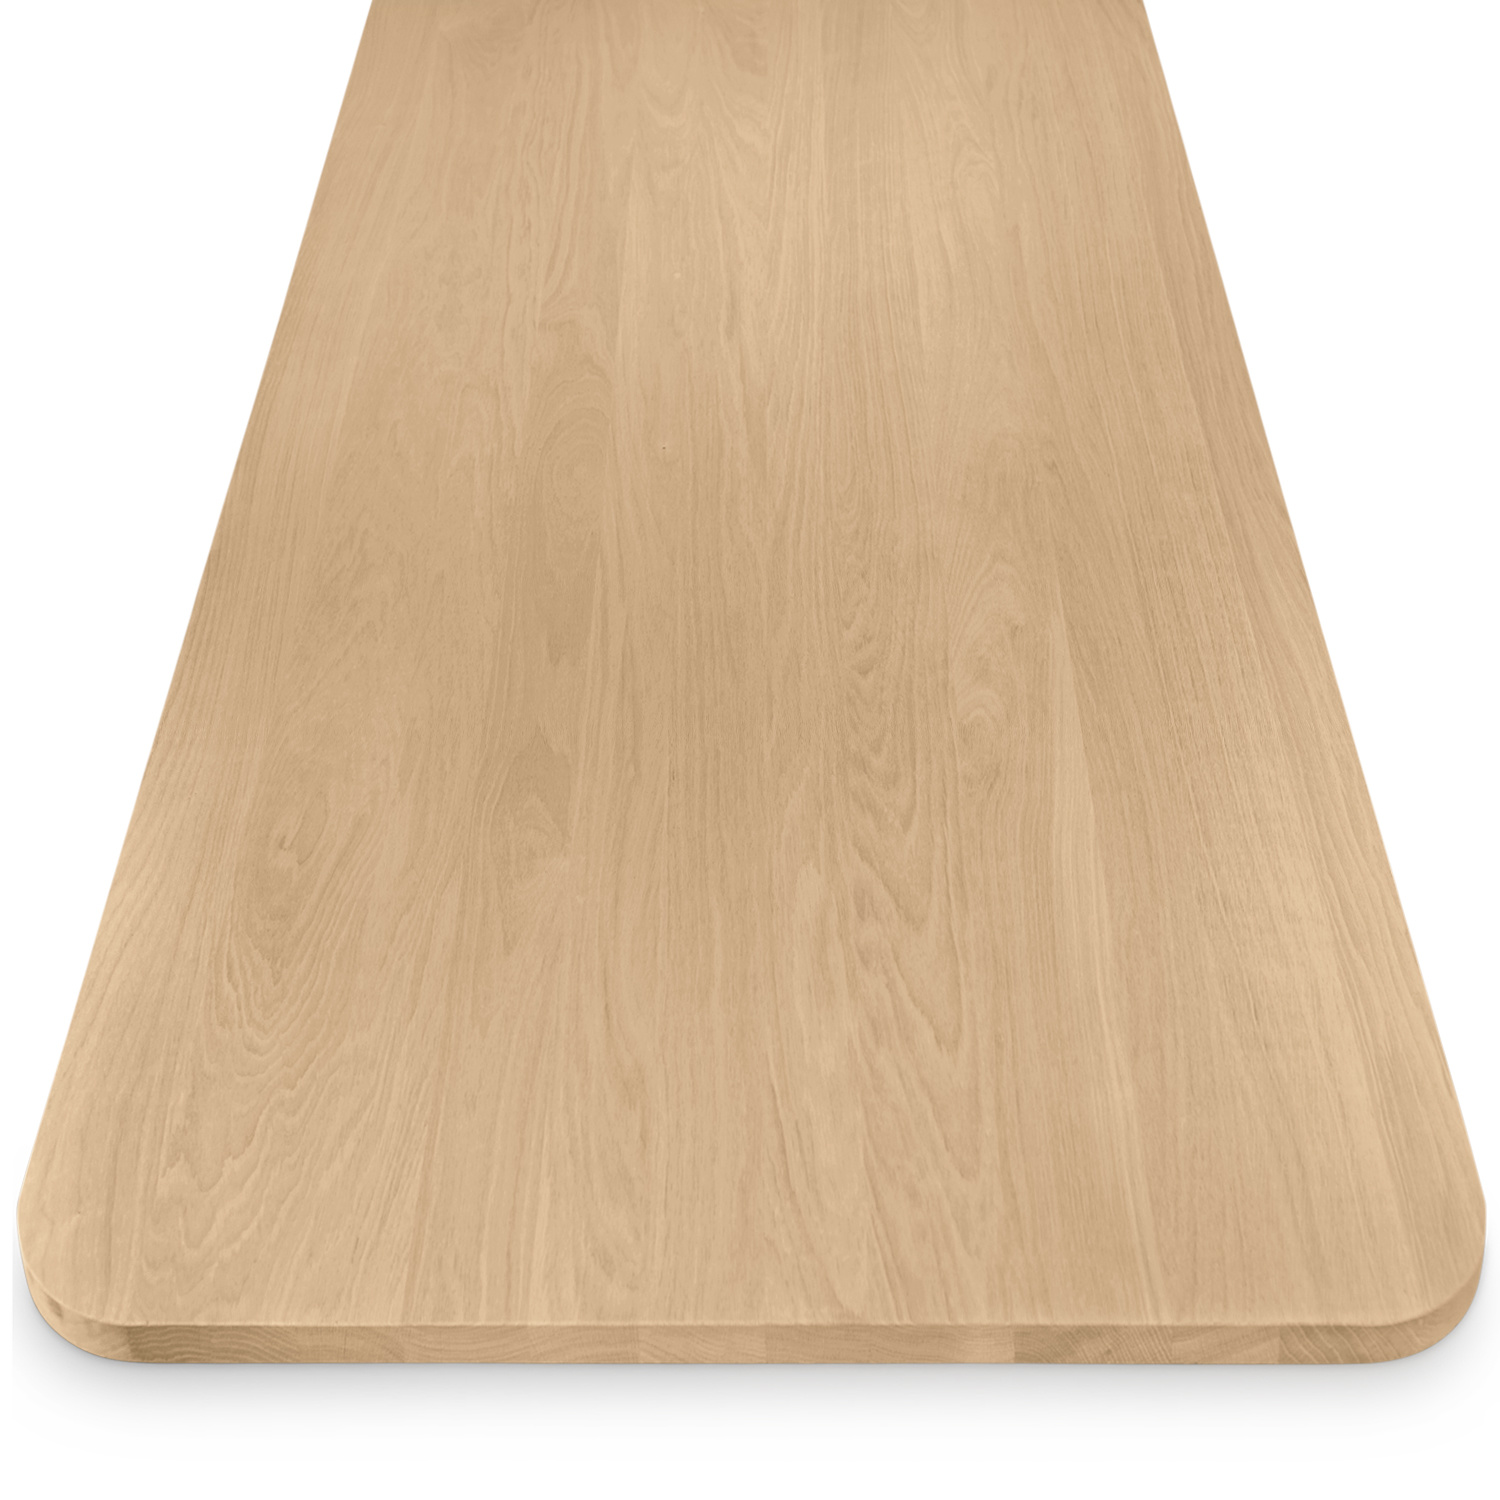  Eiken tafelblad met ronde hoeken - op maat - 3 cm dik (1-laag) - foutvrij Europees eikenhout - verlijmd kd 8-12% - 50-120x50-350 cm - Afgeronde hoeken radius 5, 8, of 10 cm